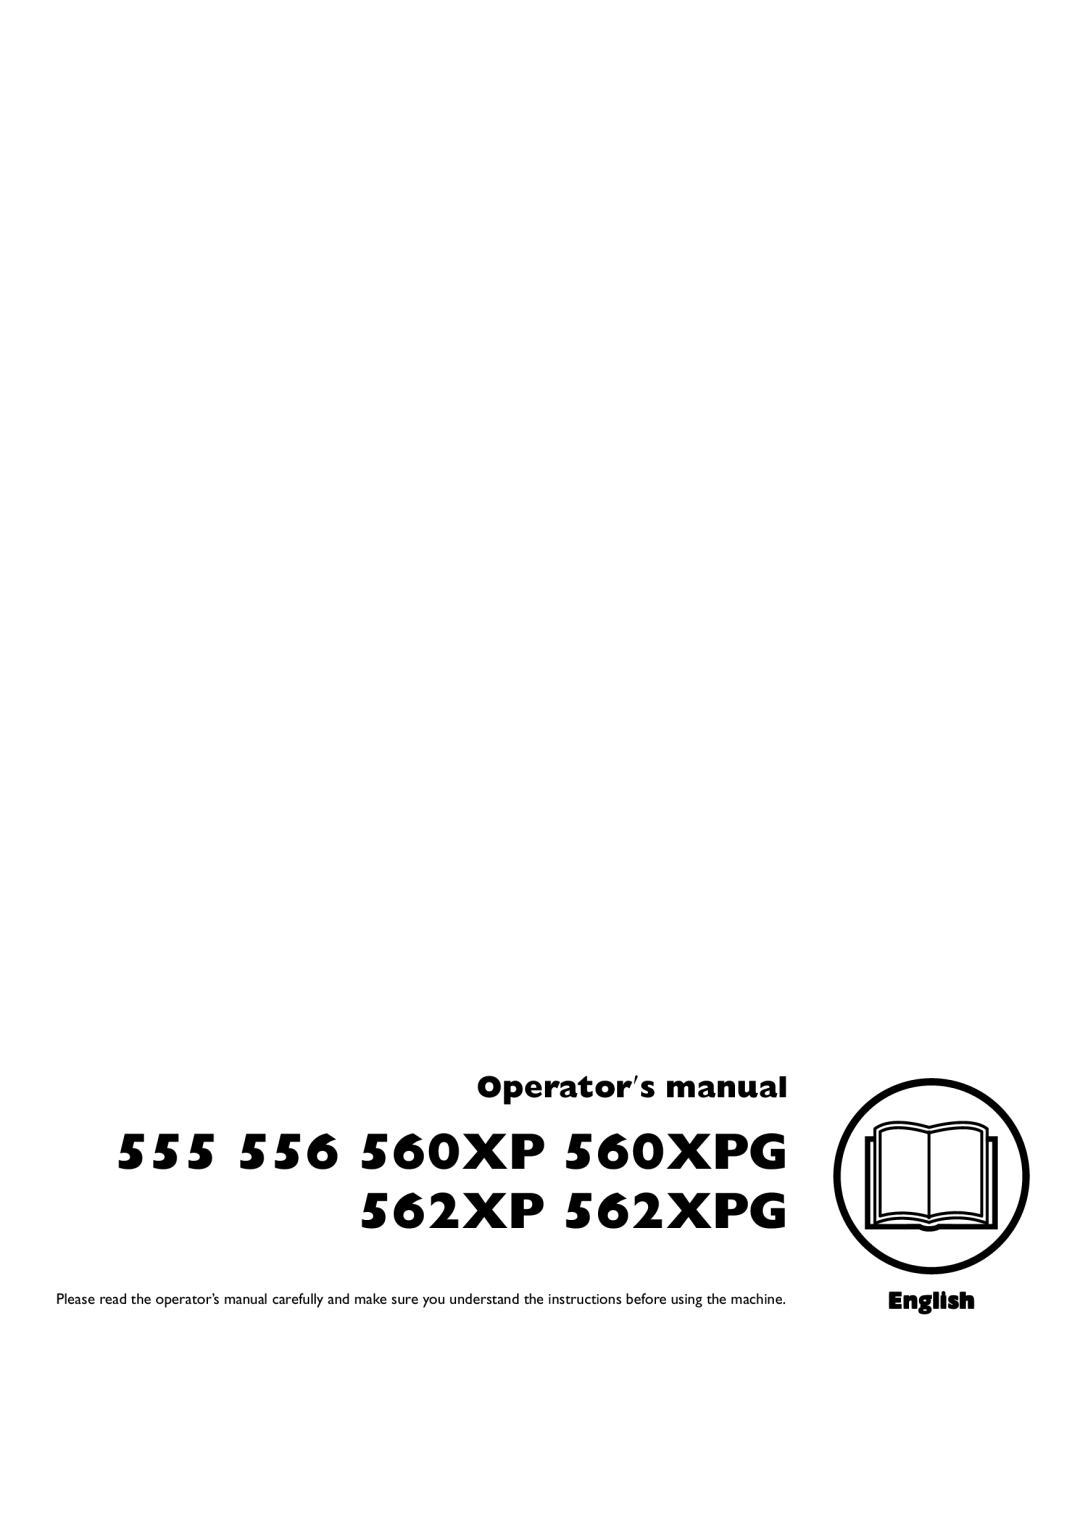 Husqvarna manual 555 556 560XP 560XPG 562XP 562XPG, Operator′s manual, English 